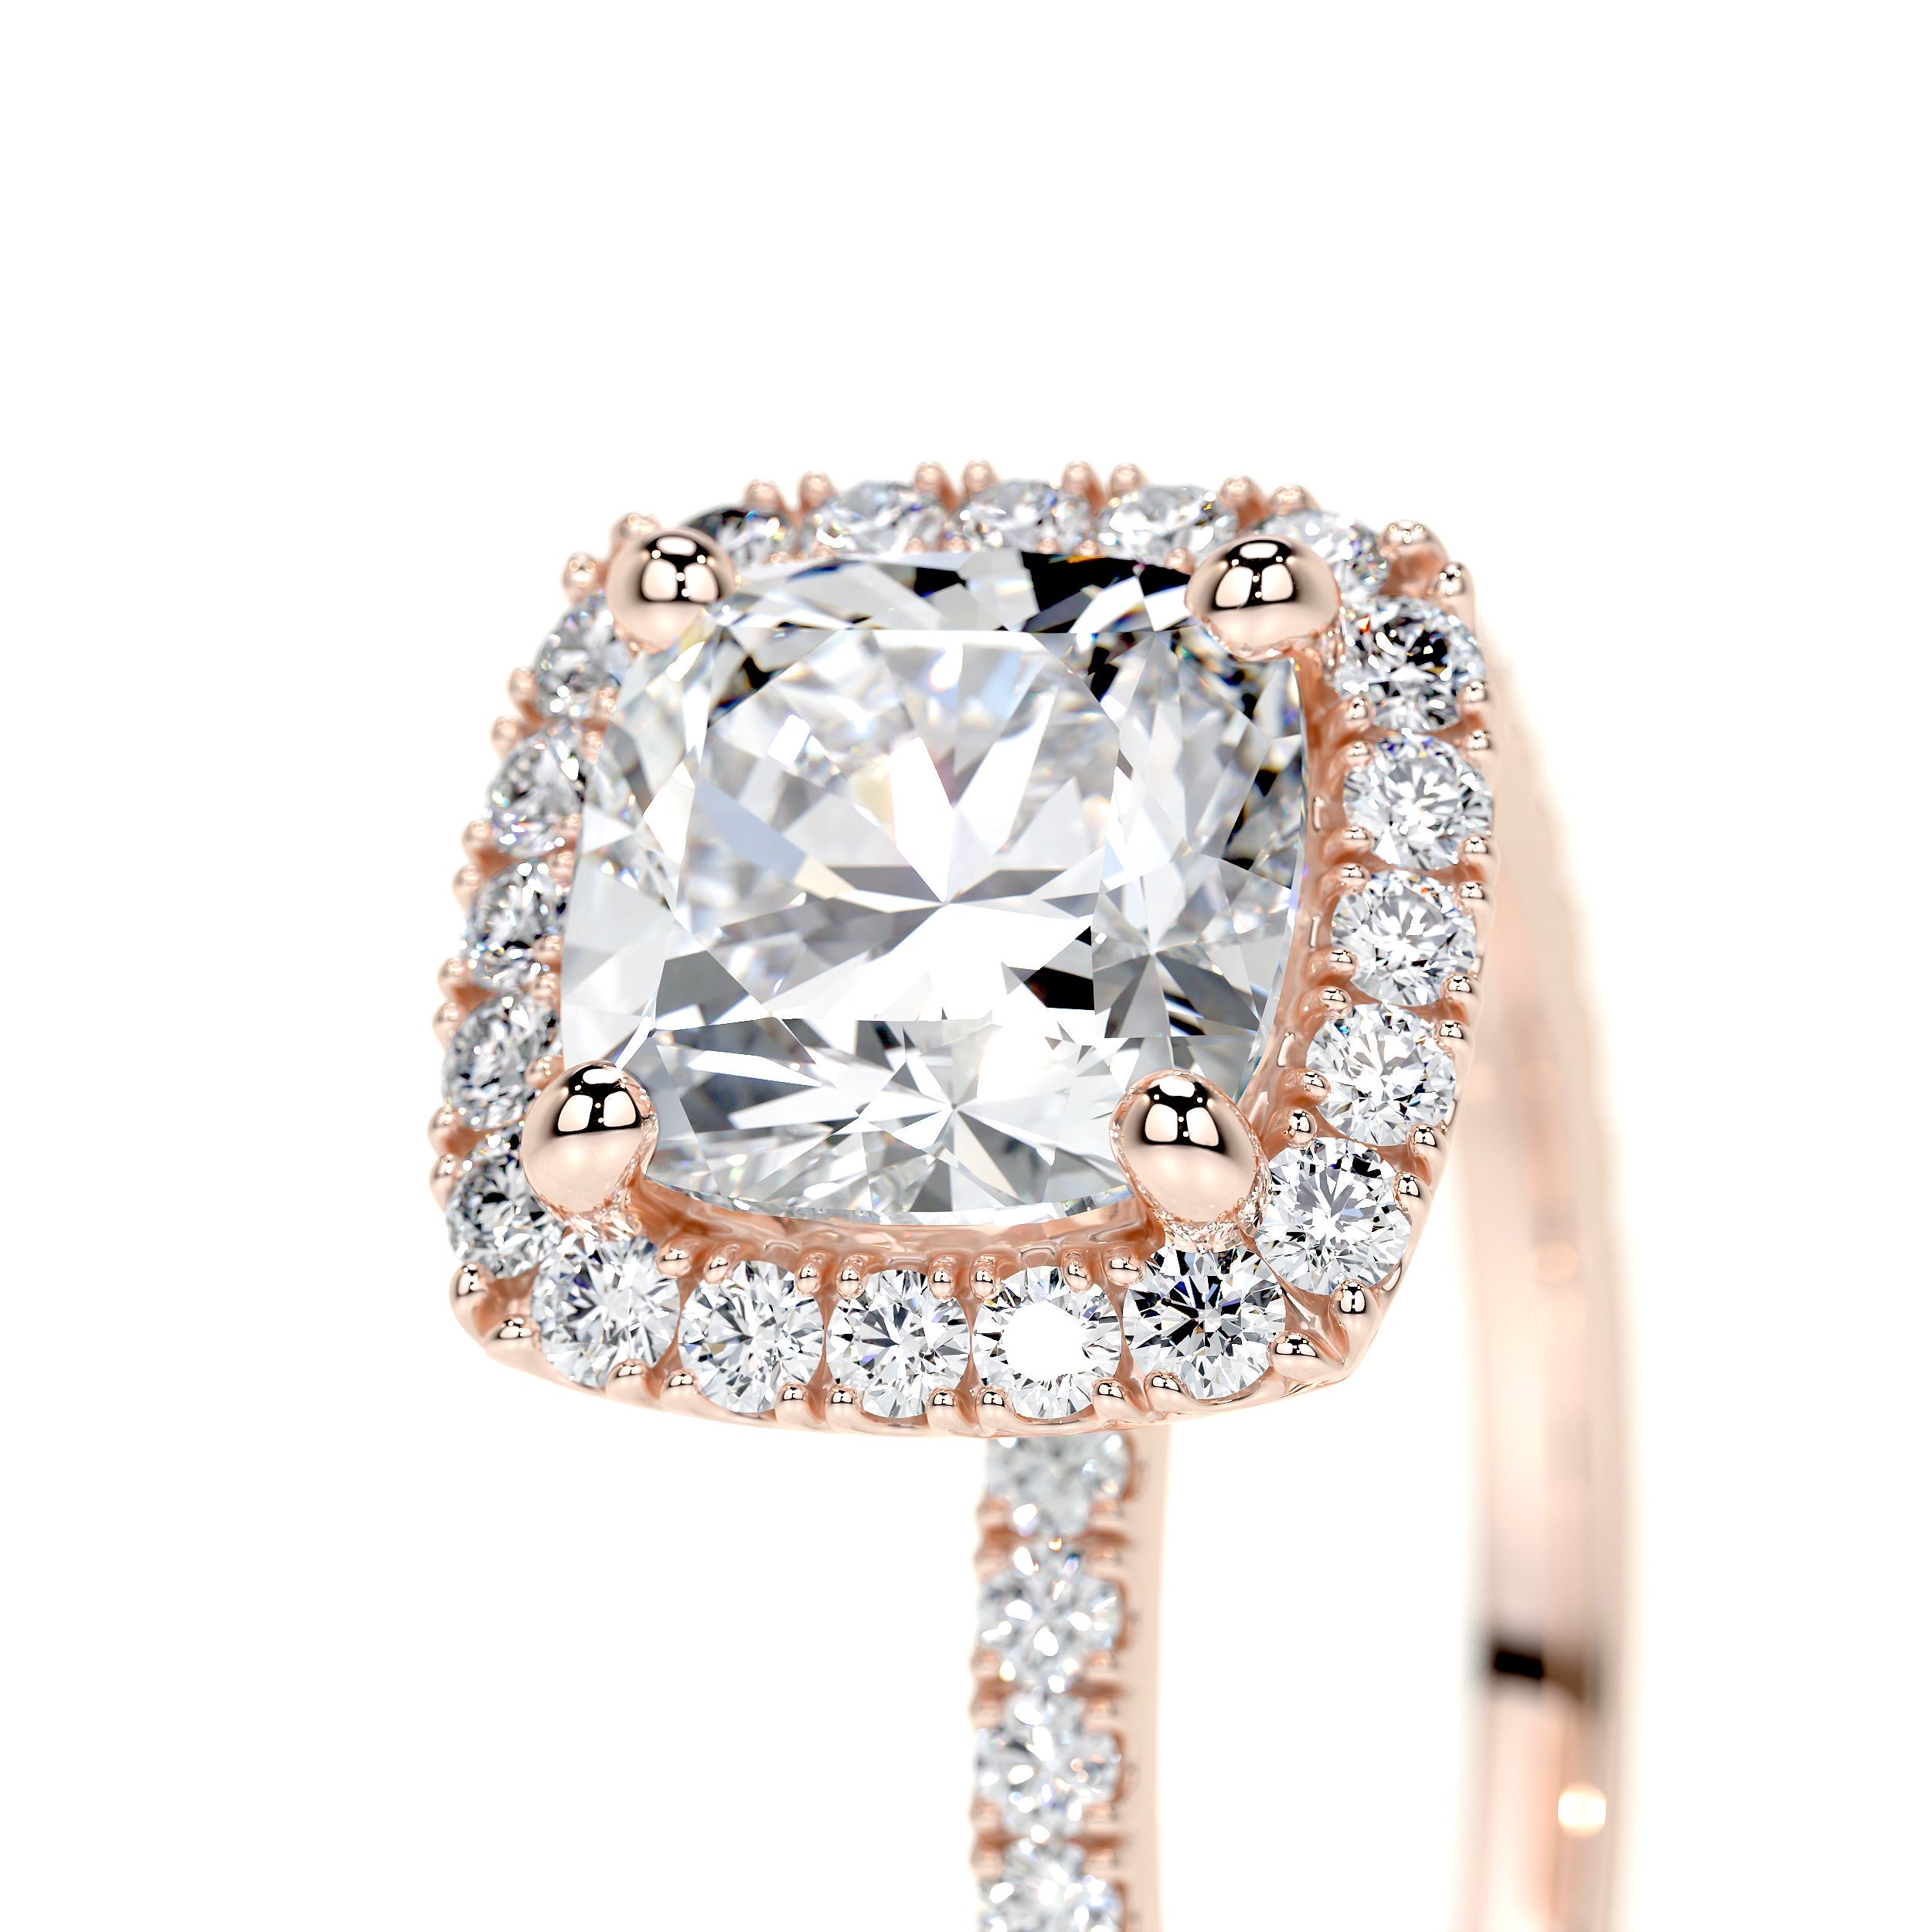 Madison Lab Grown Diamond Ring   (1.5 Carat) -14K Rose Gold